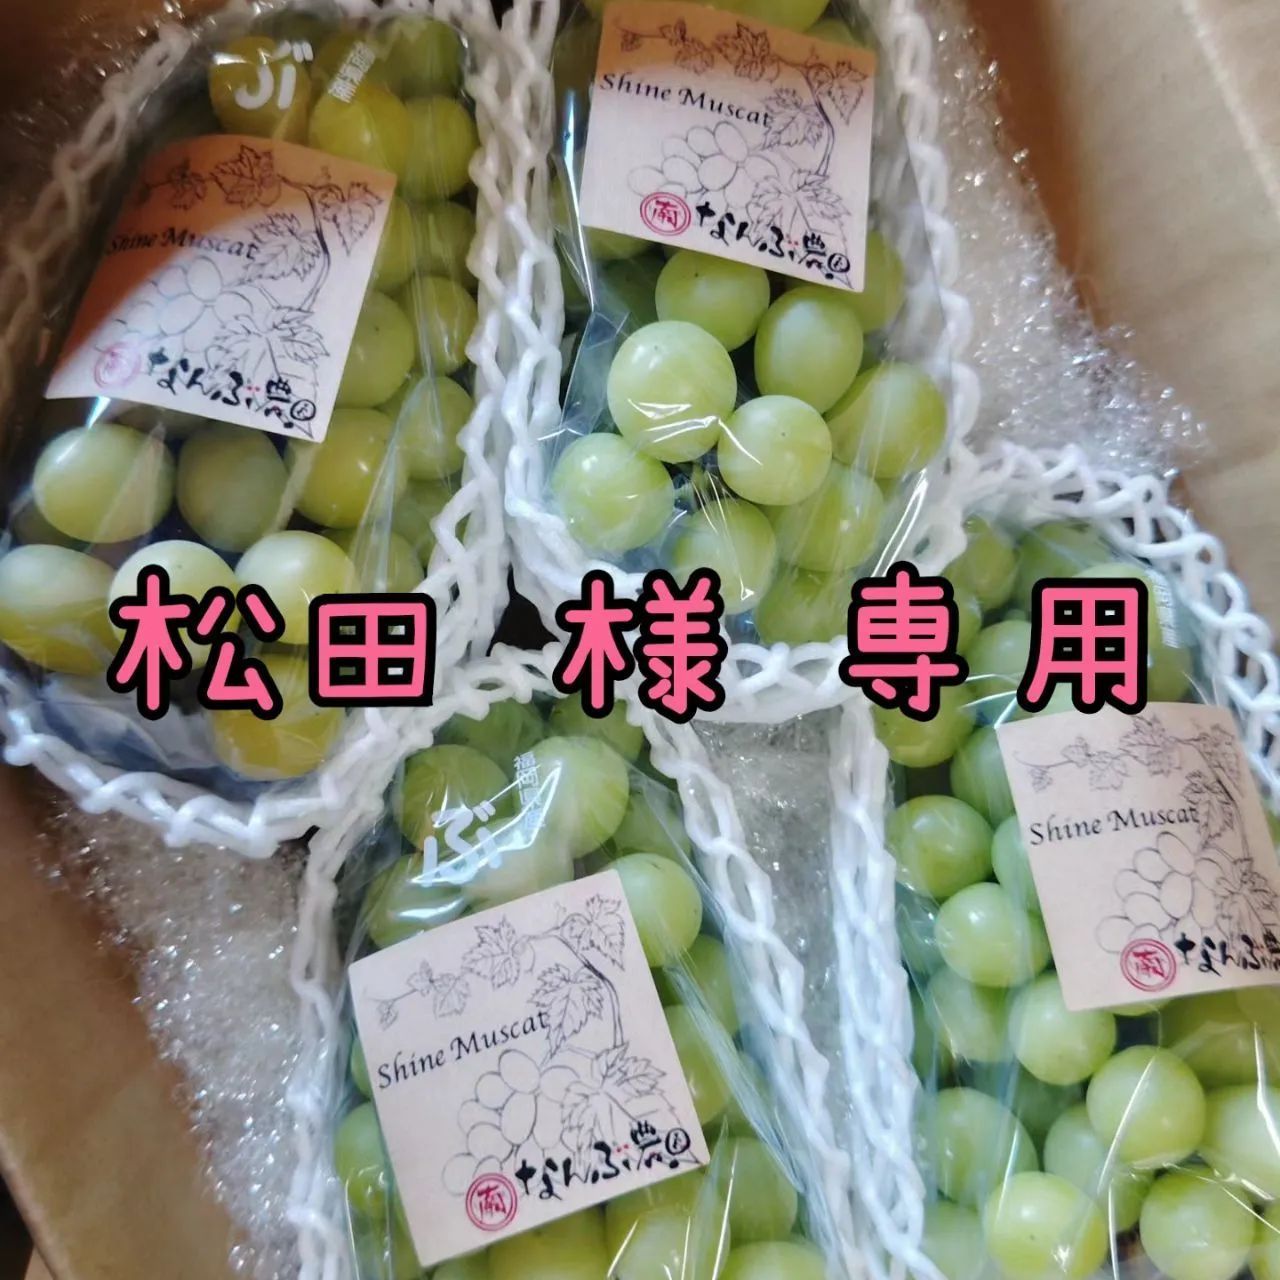 ぶどうセット(シャインマスカット)松田様 専用出品 - なんぶ農園